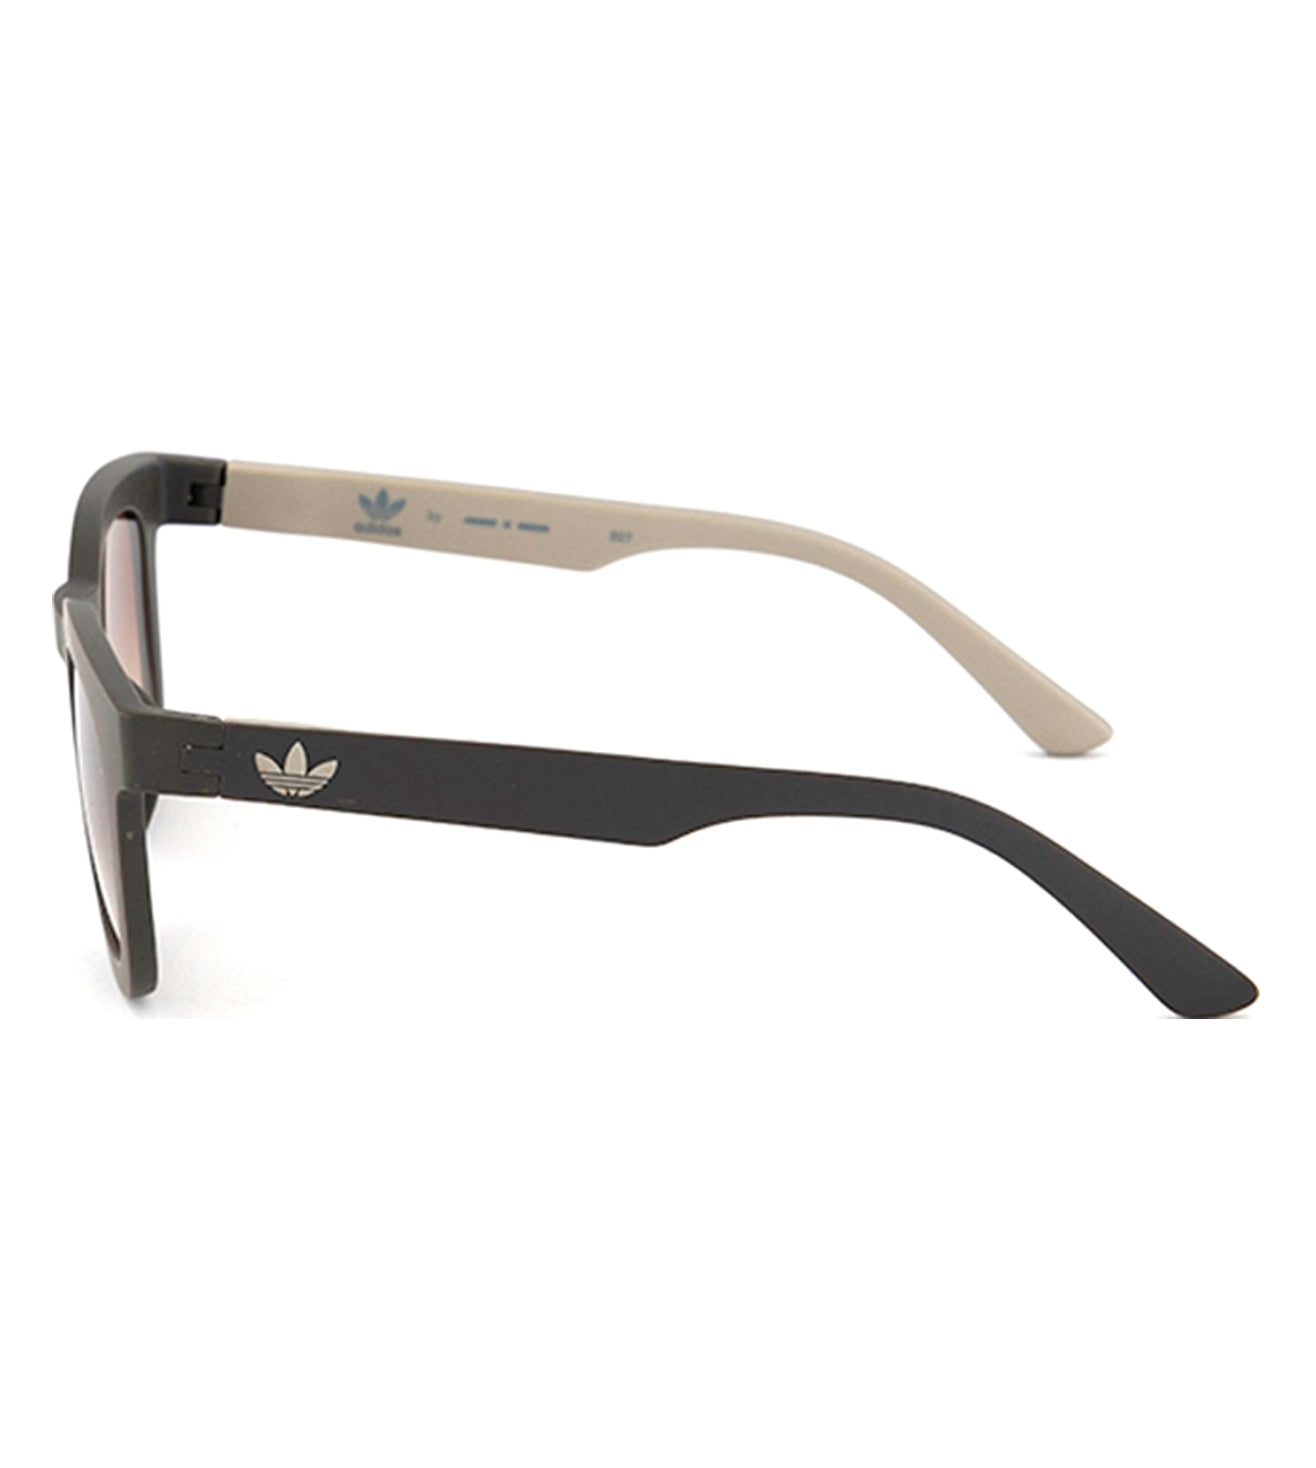 Brown Square Unisex Sunglasses